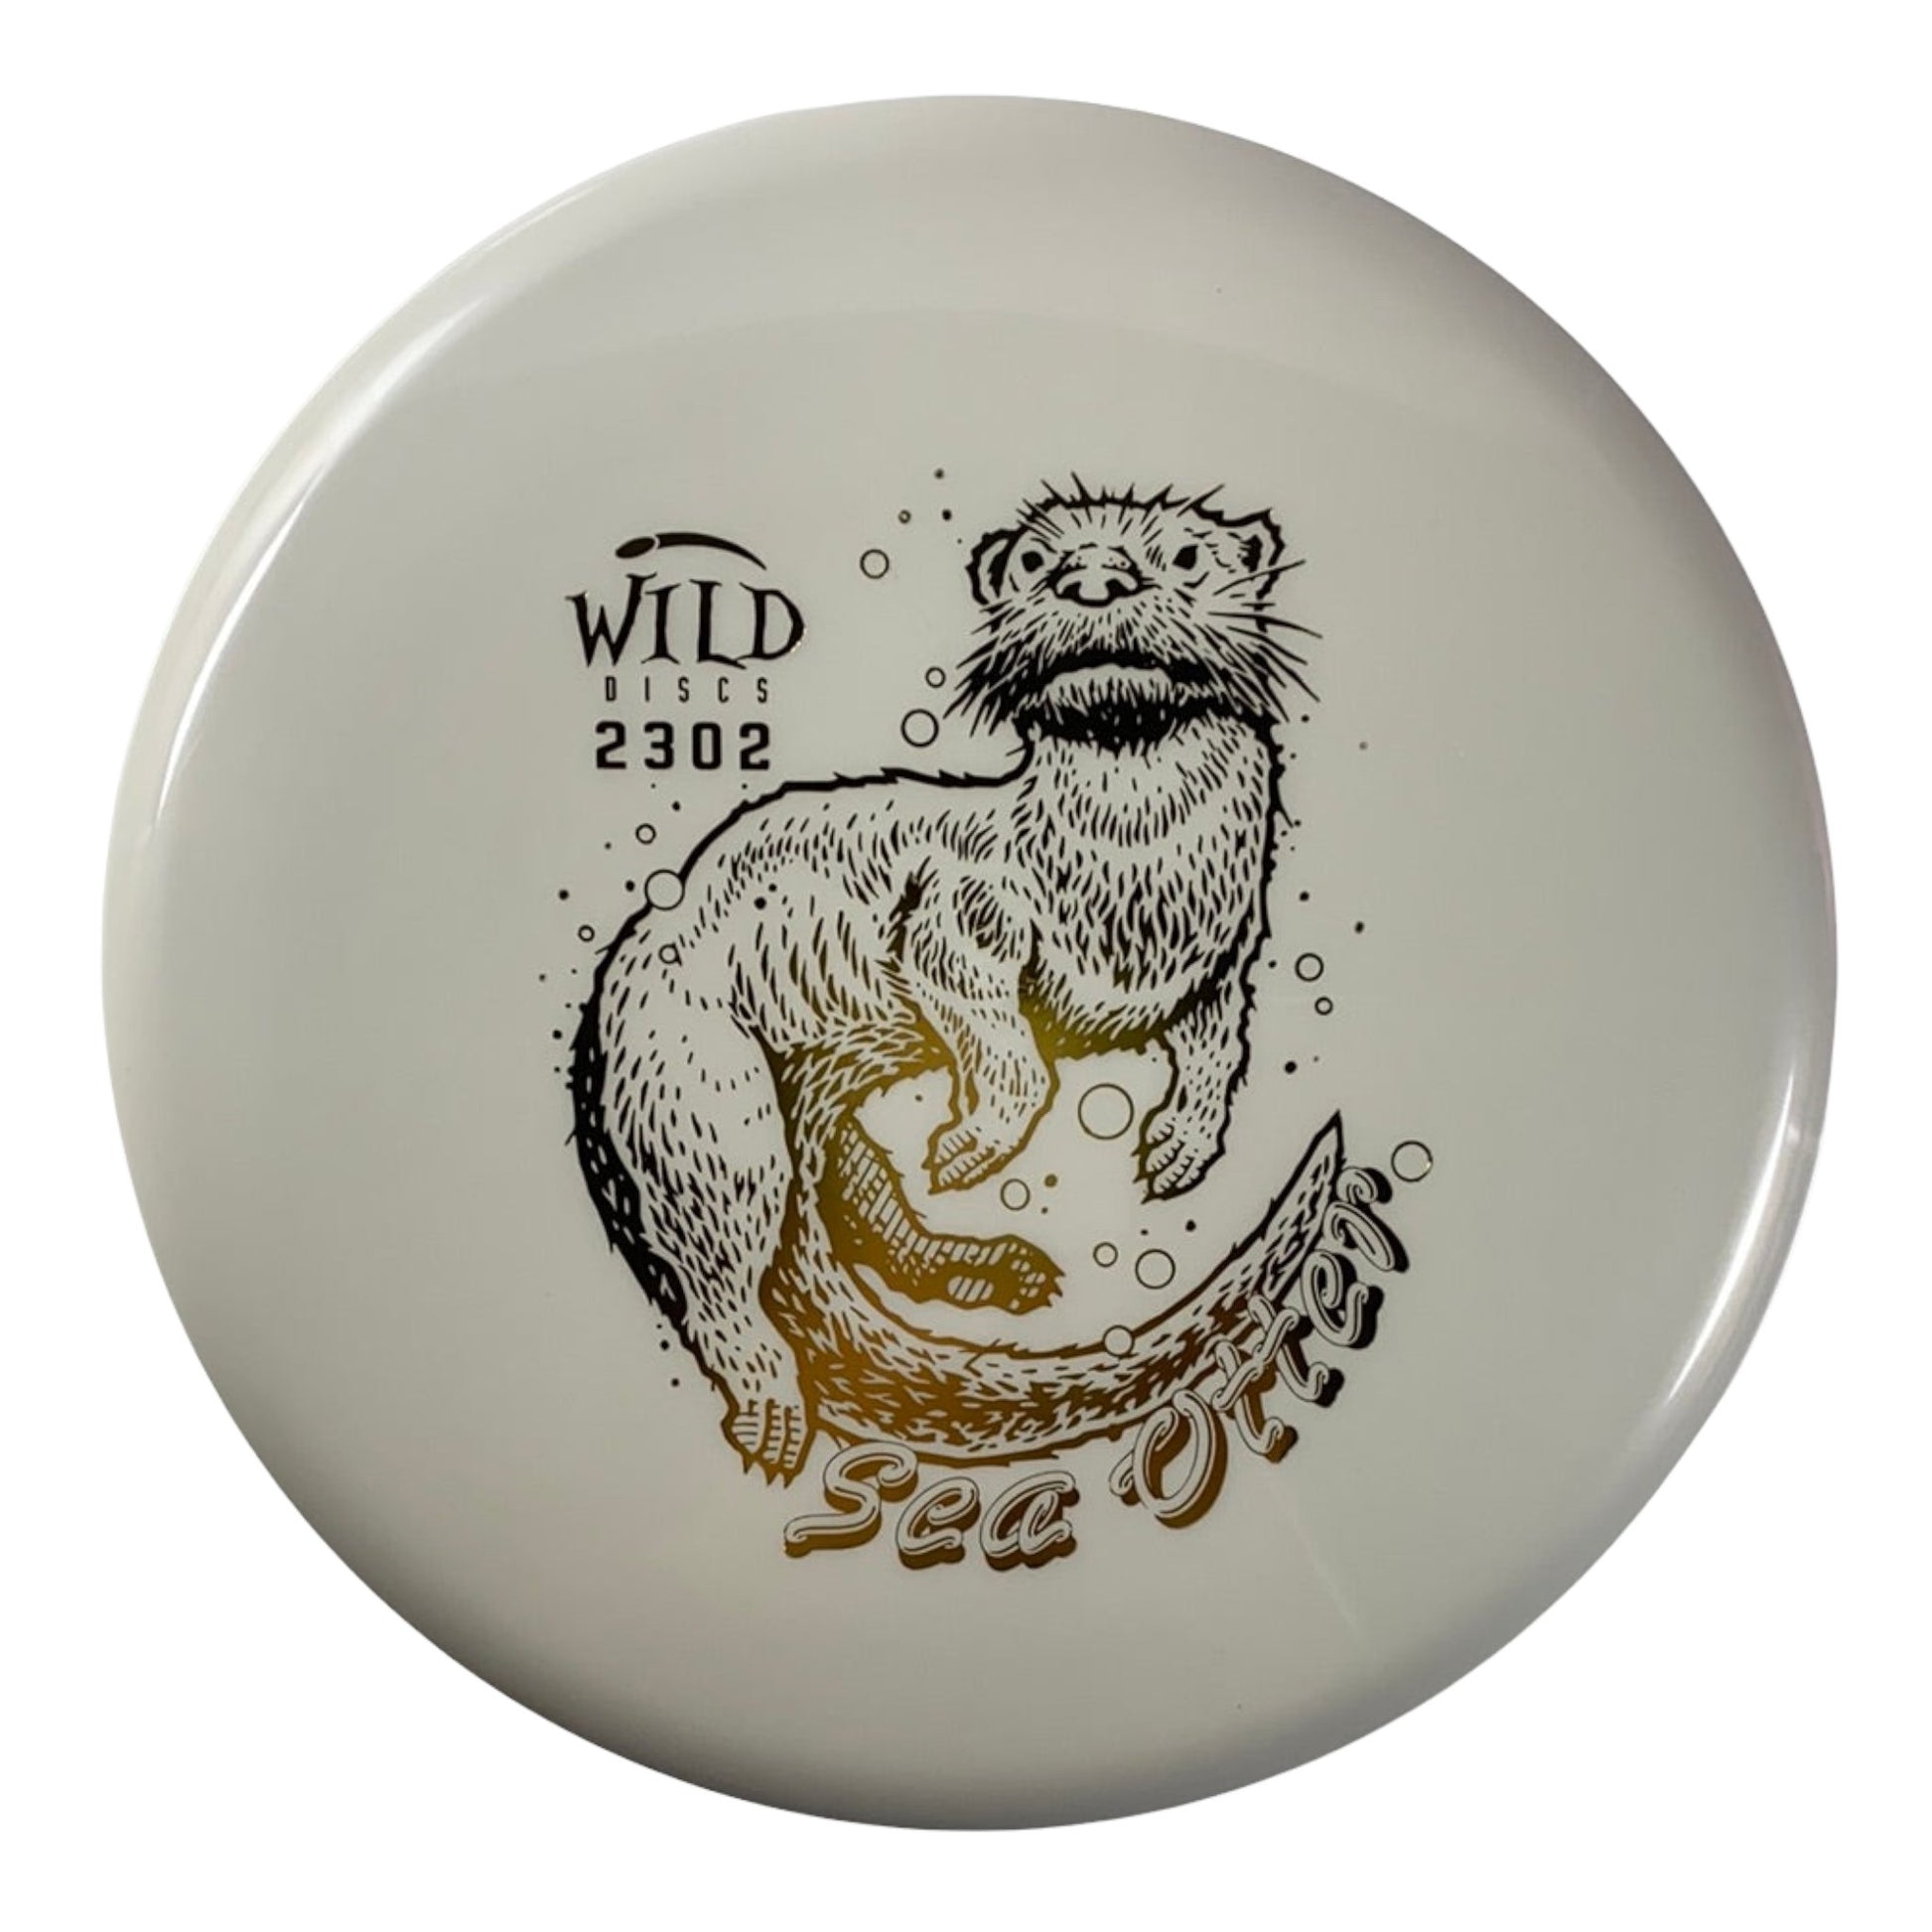 Wild Discs Sea Otter | Lava | White/Gold 175g Disc Golf